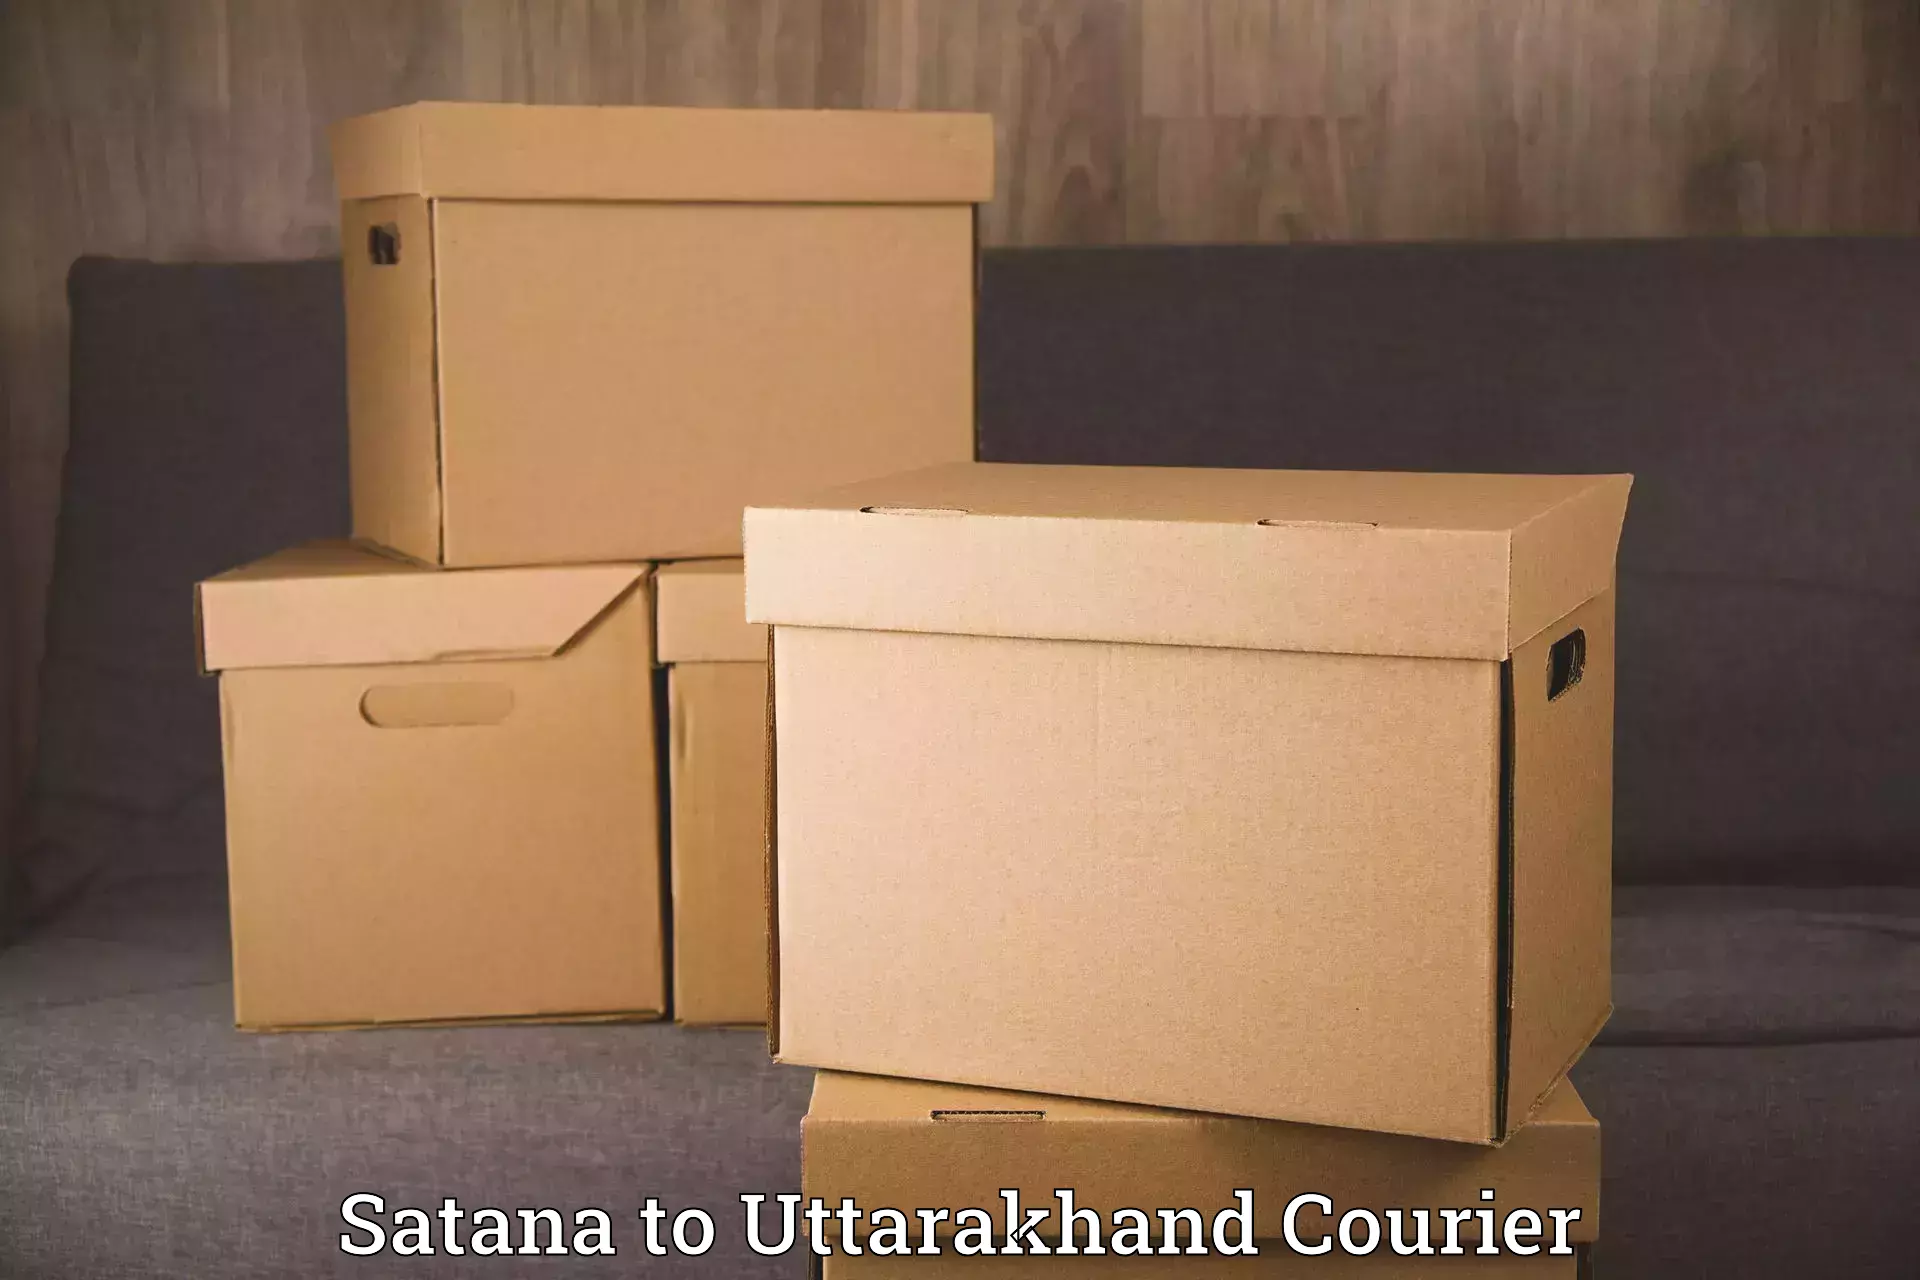 Trusted moving company Satana to Uttarakhand